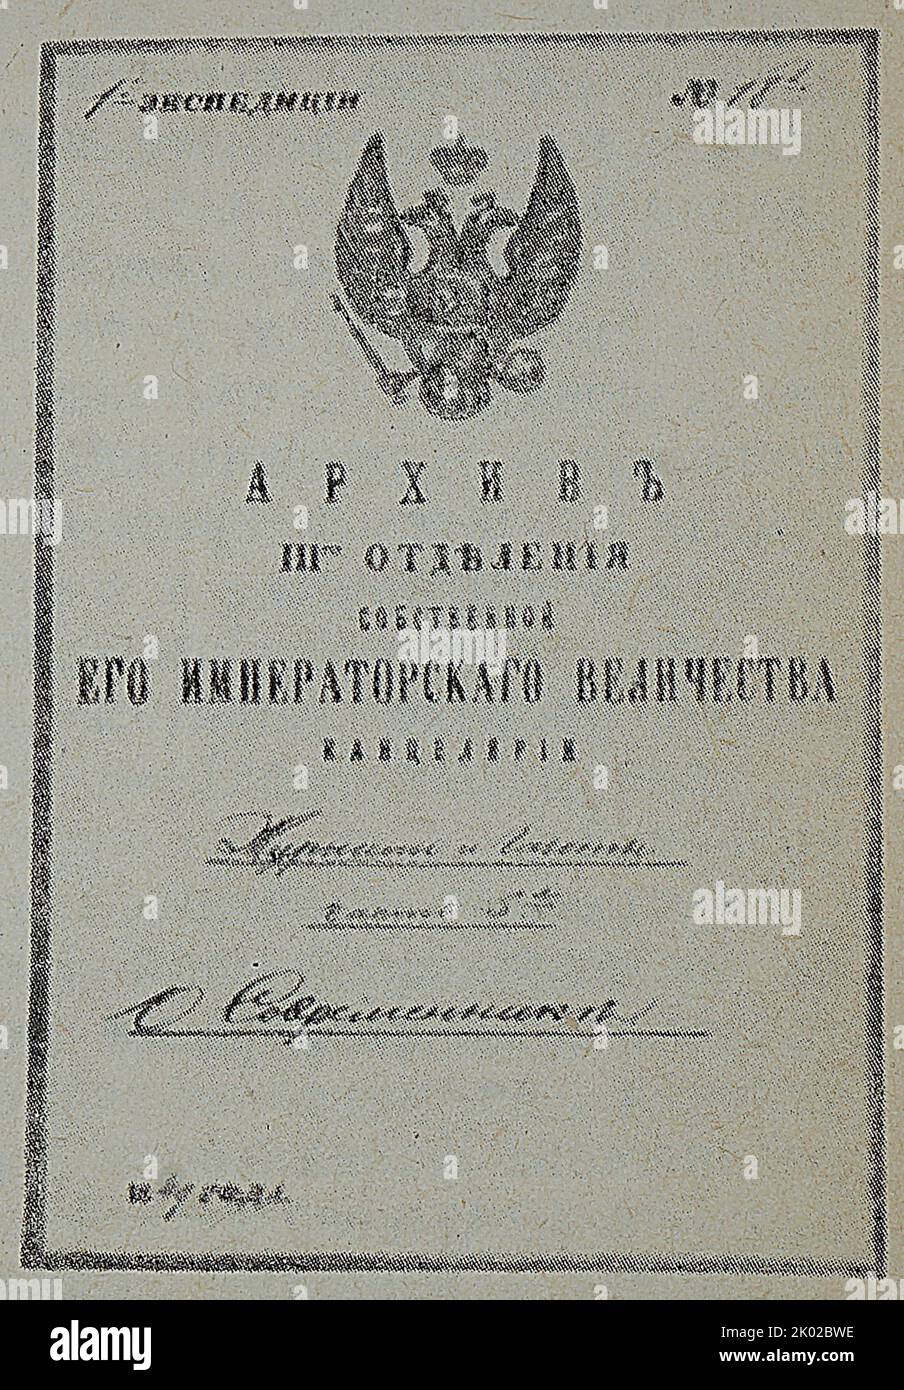 Il caso della terza filiale per la rivista Sovremennik. 1849. Foto Stock